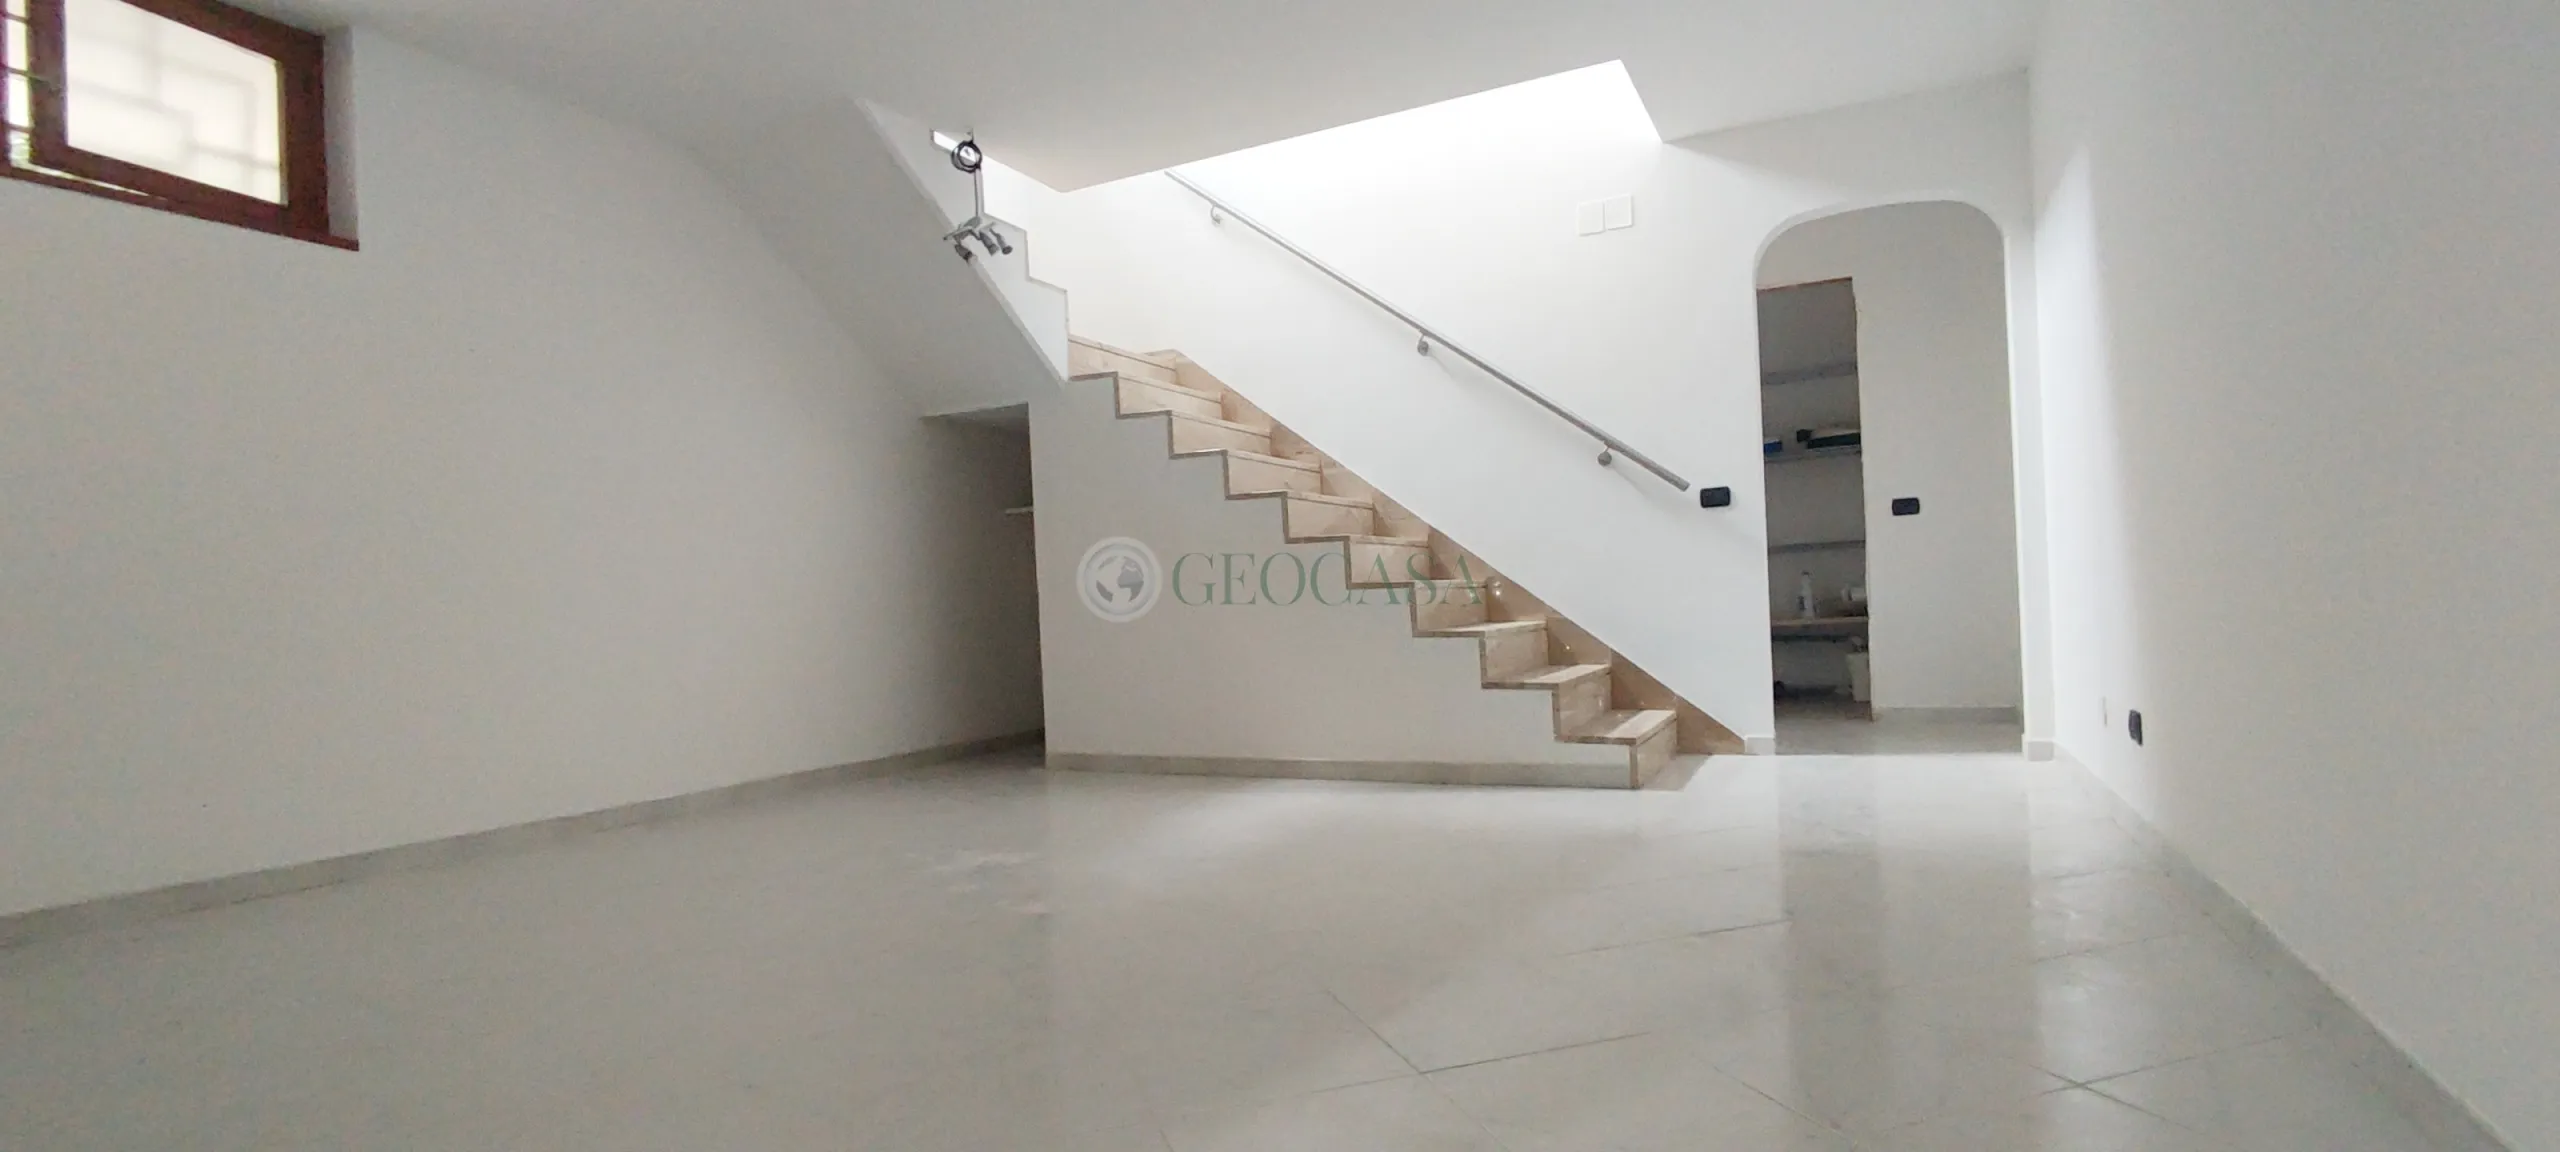 Immagine per Appartamento in vendita a Carrara via Giovanni Baratta 4